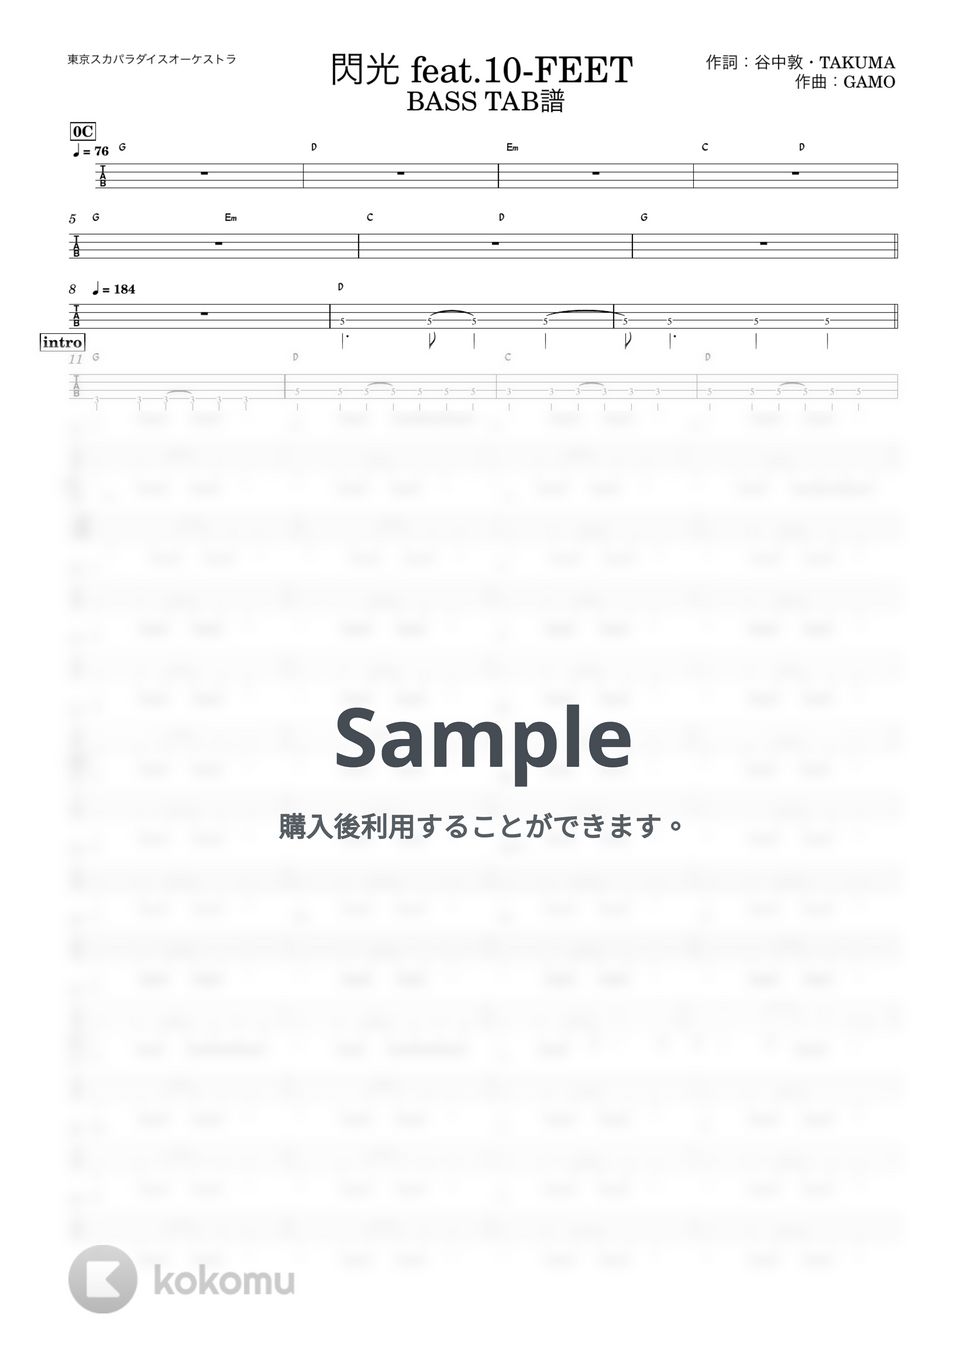 東京スカパラダイスオーケストラfeat. 10-FEET - 閃光 (『ベースTAB譜』4弦ベース対応) by 箱譜屋